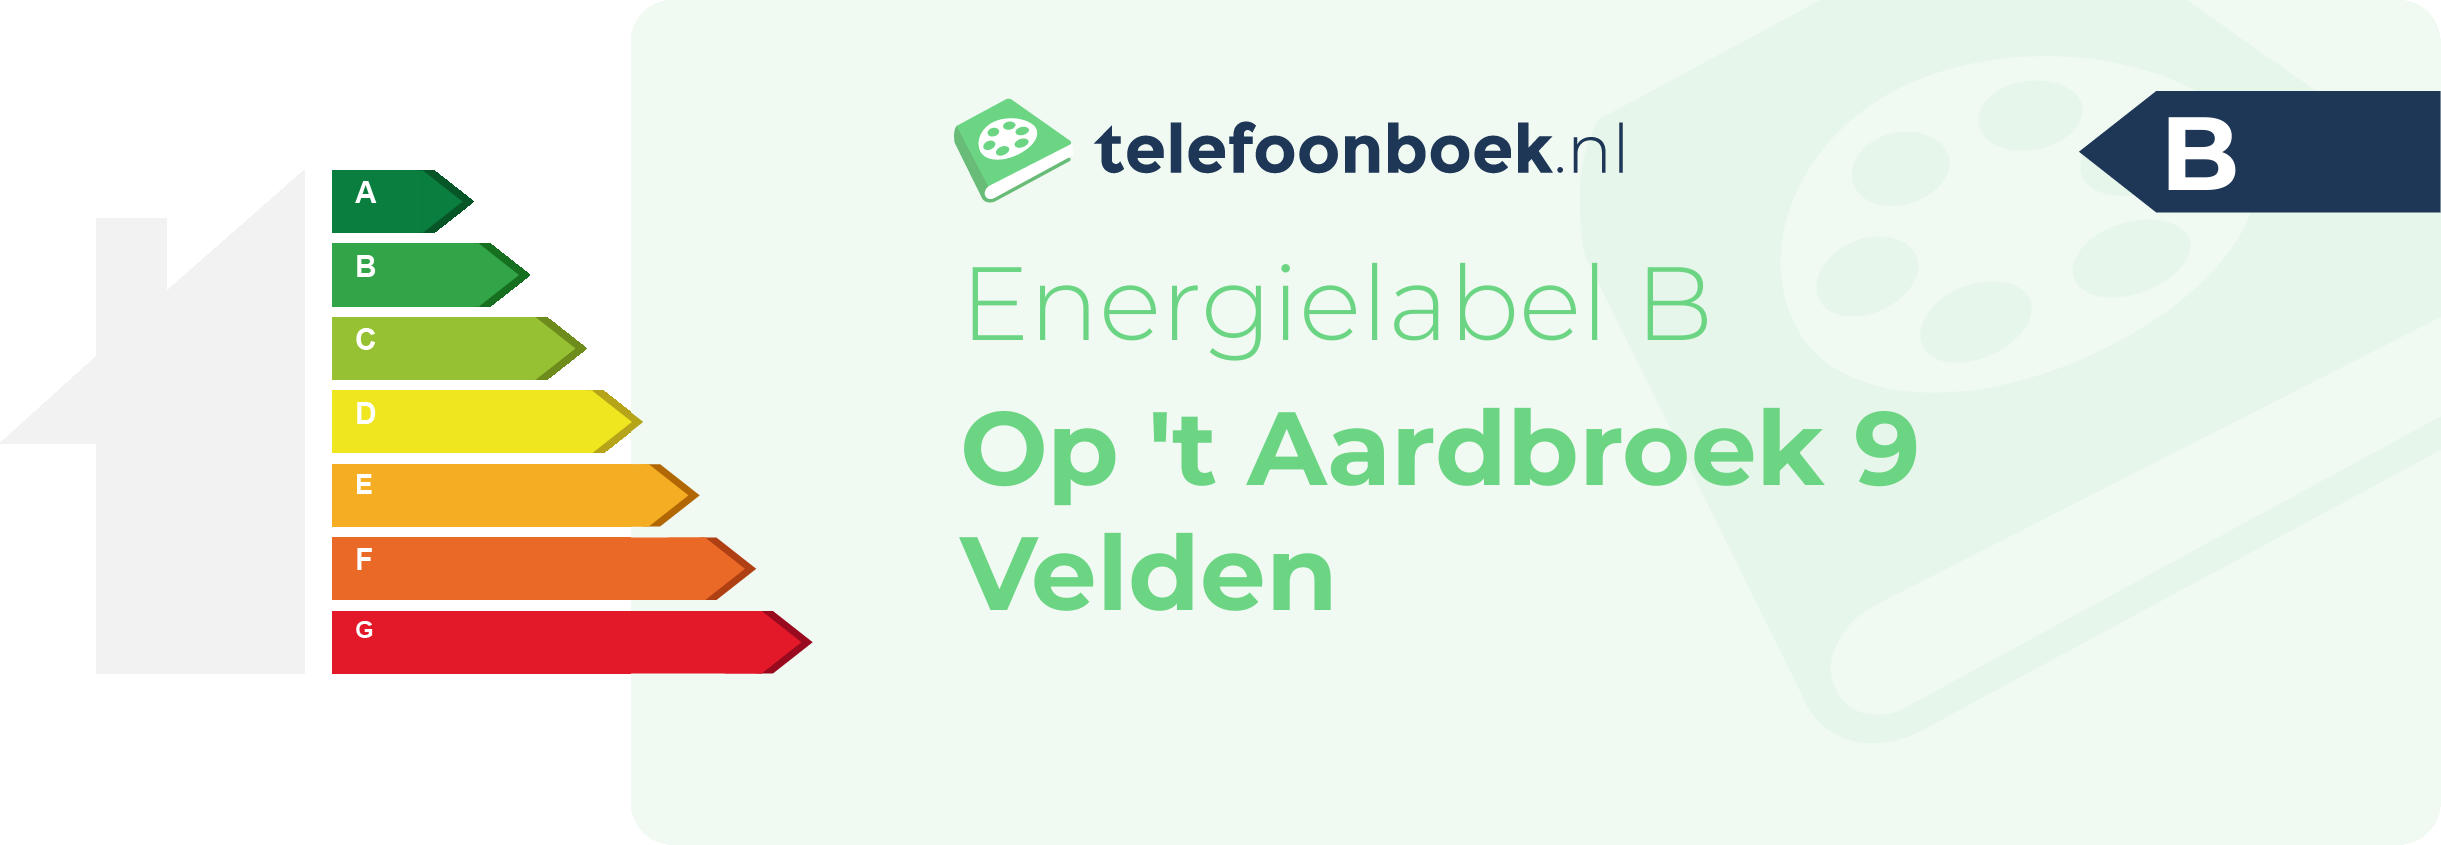 Energielabel Op 't Aardbroek 9 Velden